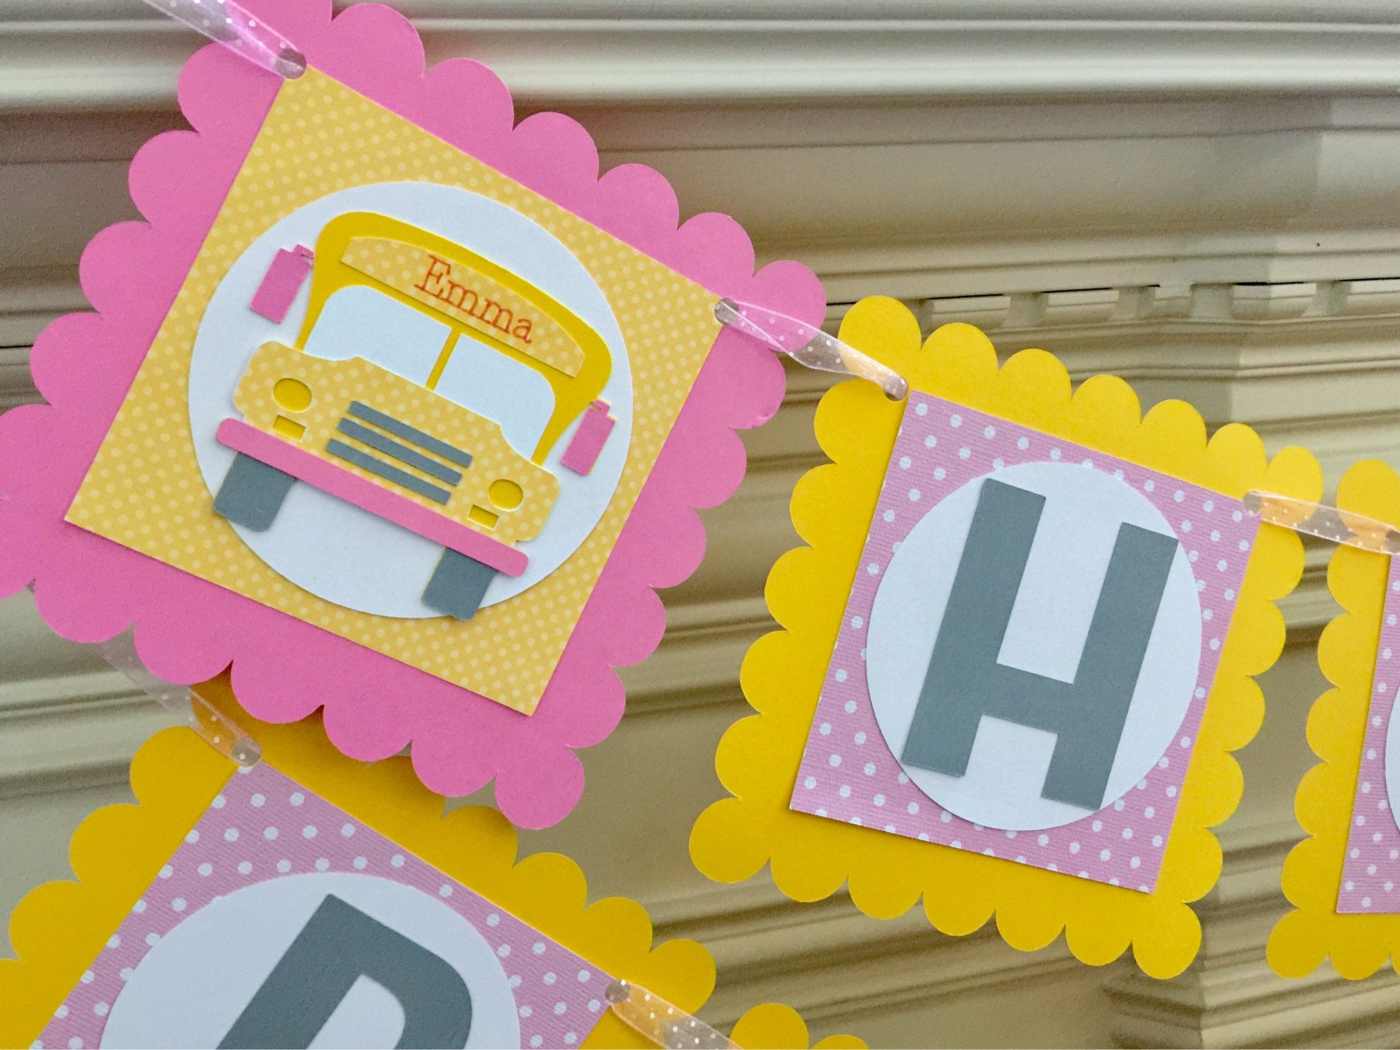 Einschulung Deko für Mädchen mit Partygirlande in Rosa und Gelb mit Buchstaben und Schulbus